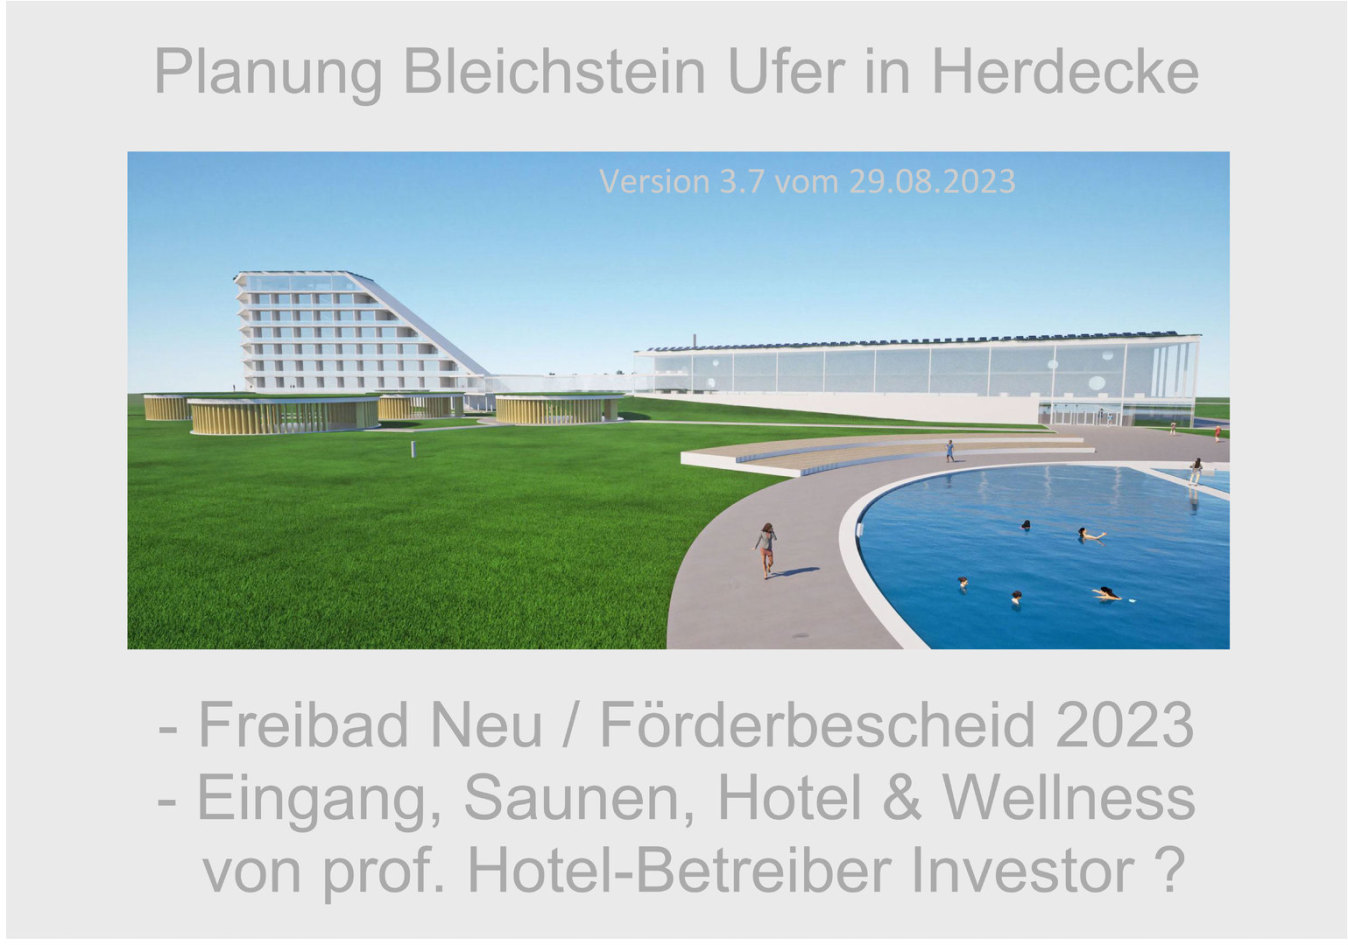 Freibad Herdecke - Neubau-Vorschlag - Hotel, Wellness, Saunen und Eingang vom Investor gegen Bauland - Freibad-Neubau (Becken) hat Förderbescheid Stadt Herdecke